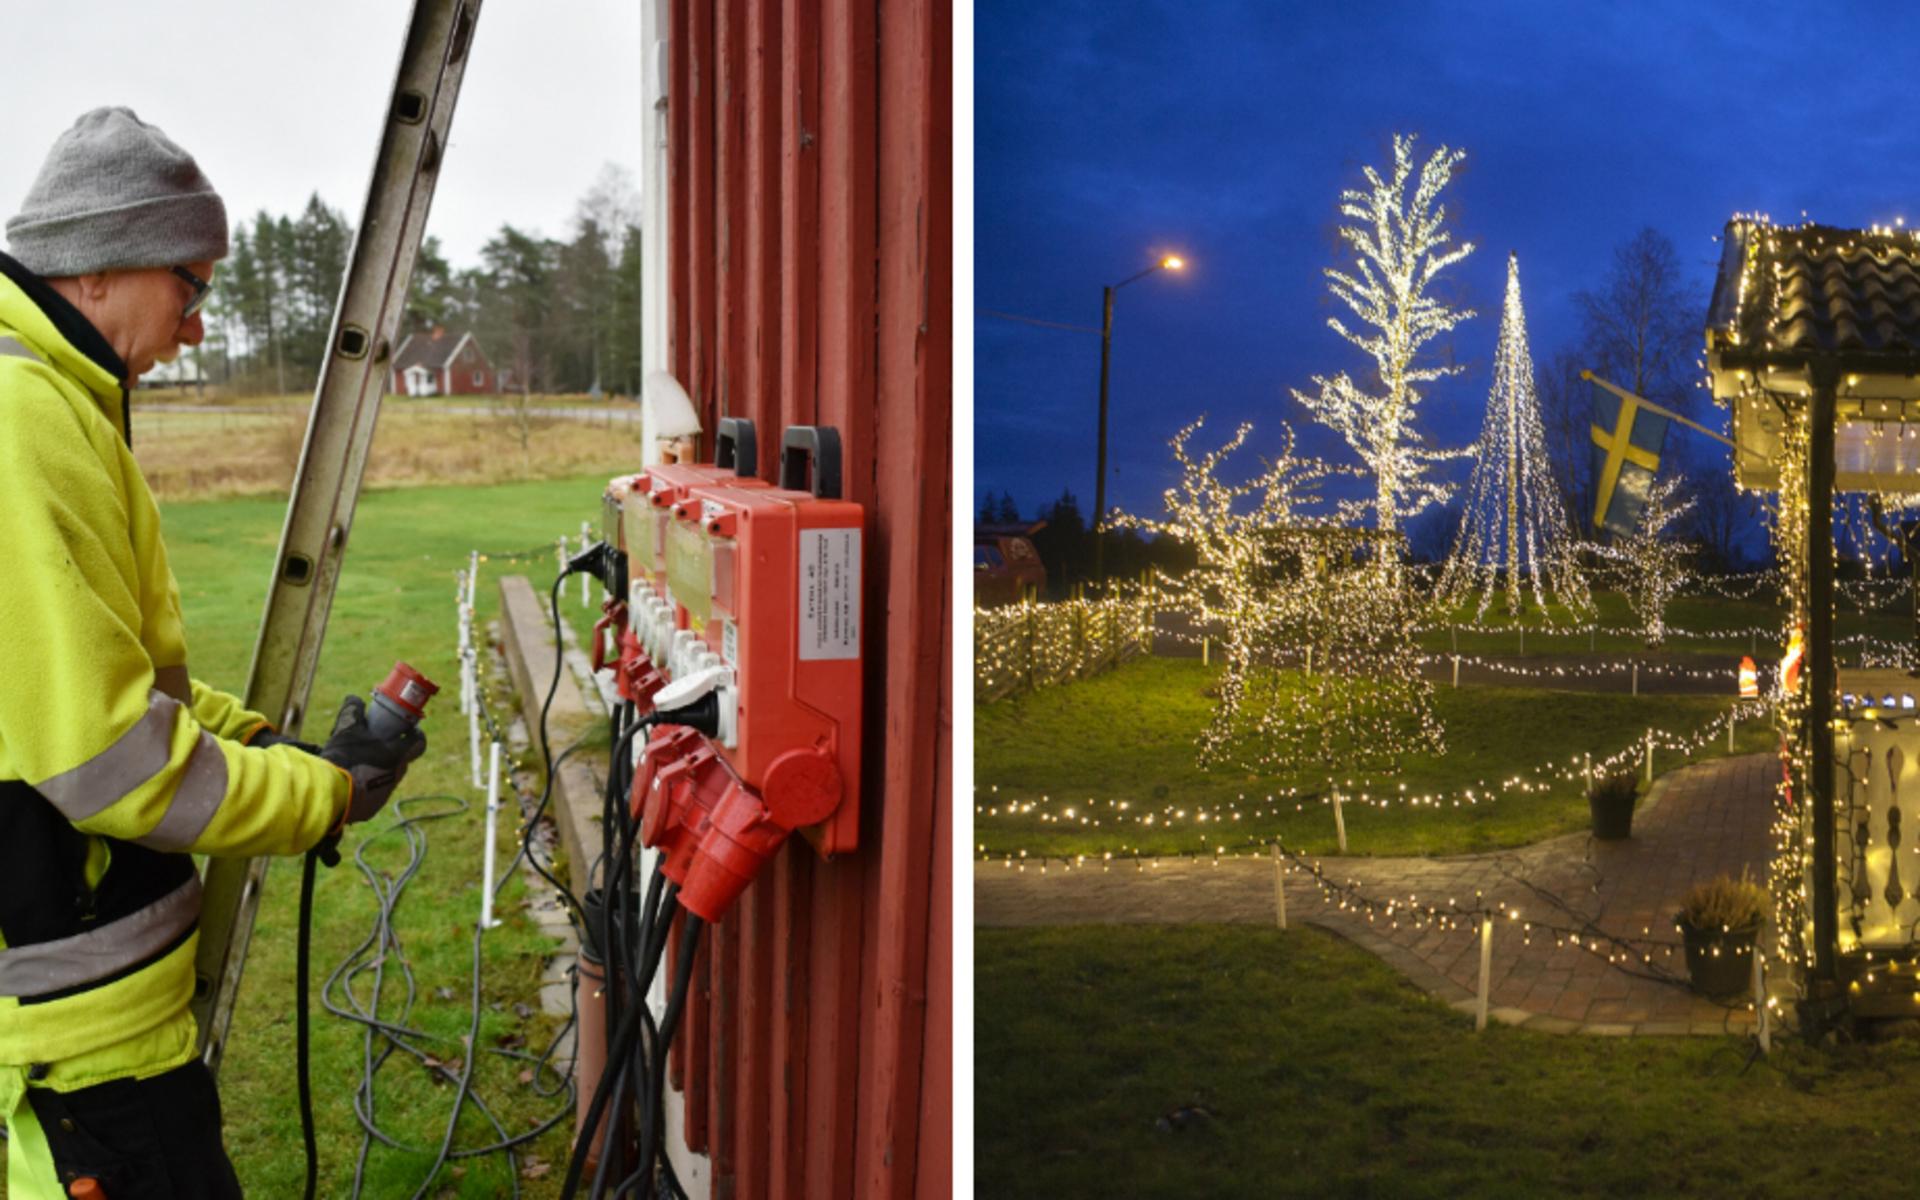 Kjell Runemyr är inte som andra när det kommer till julbelysning. Han nöjer sig inte med ett ljusnät här och där, utan har pyntat hela sitt hus och sin trädgård med 180 000 lampor.